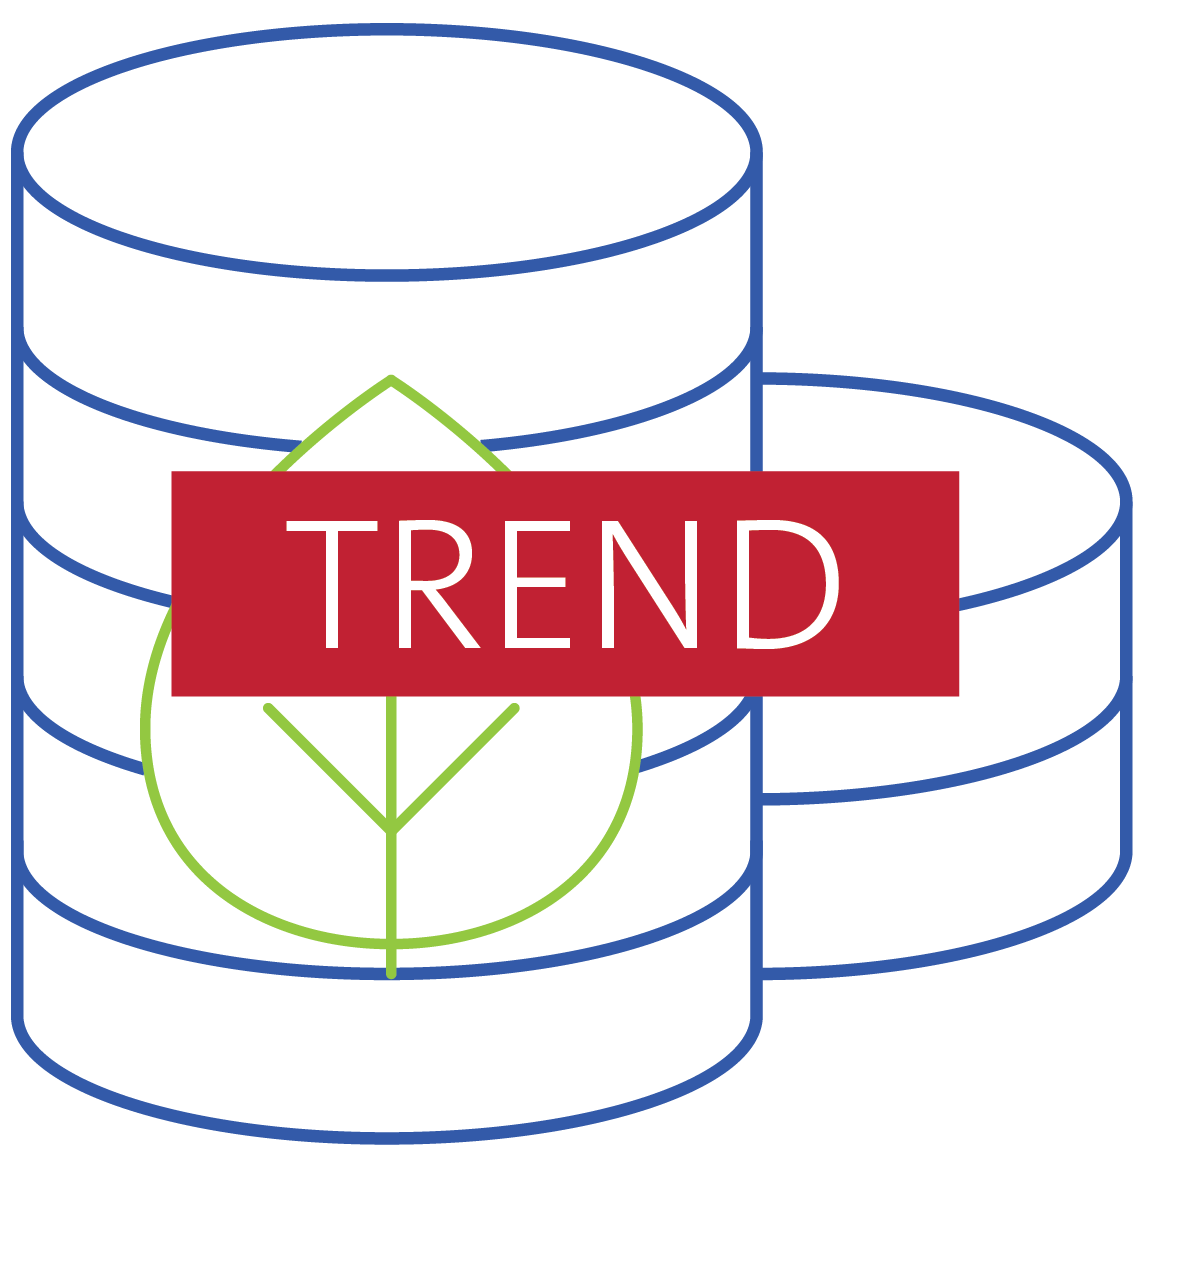 Key trend icon for ESG data